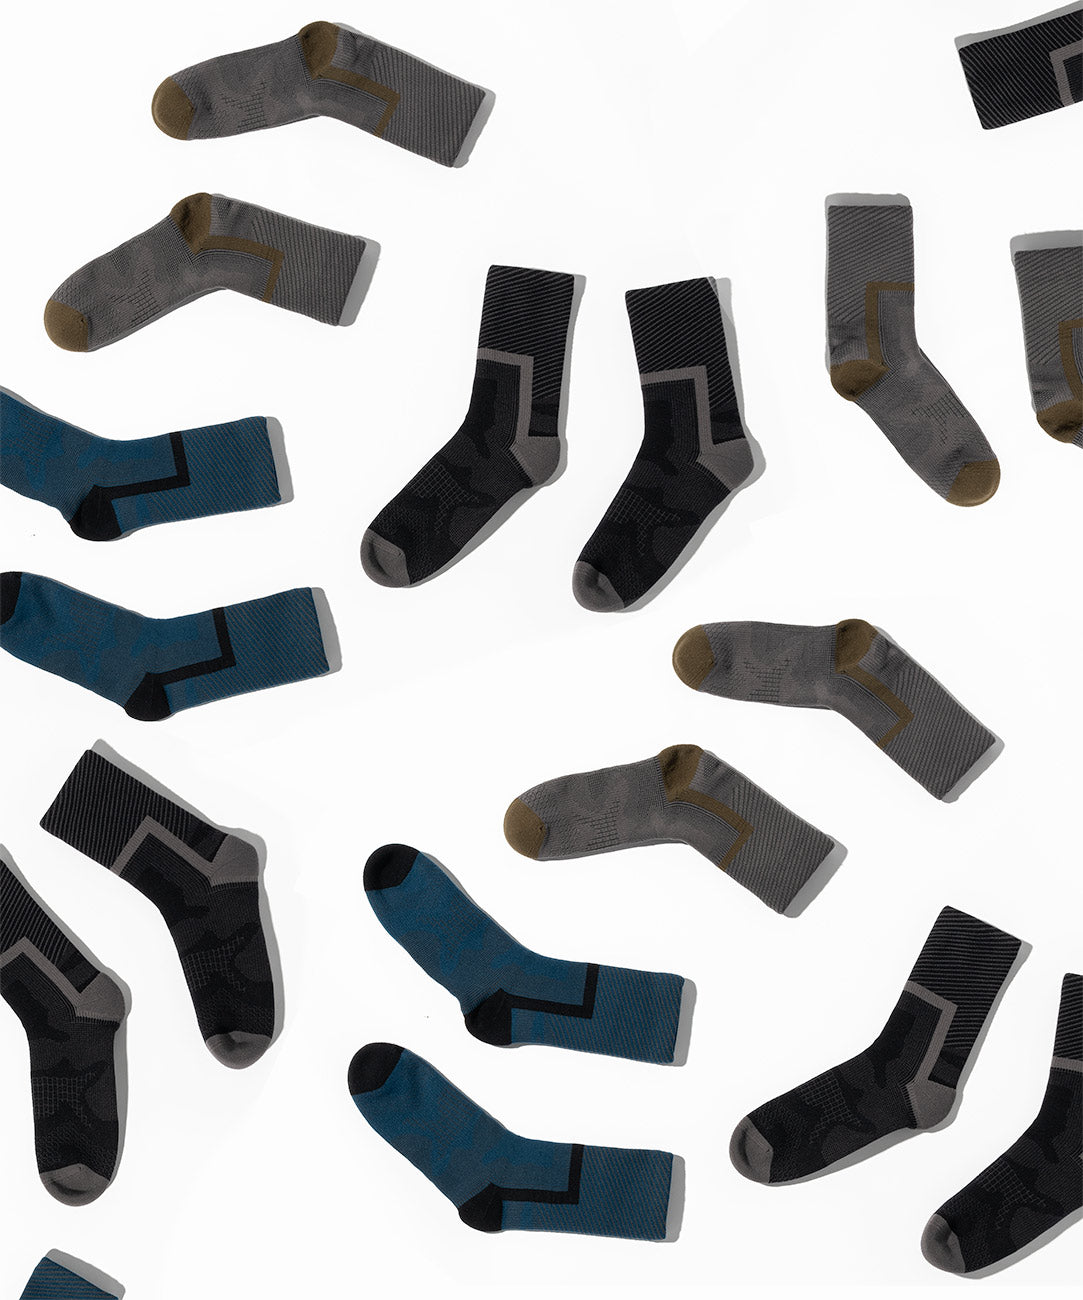 Crosspoint Ultra-Light Waterproof Socks - Wool Blend